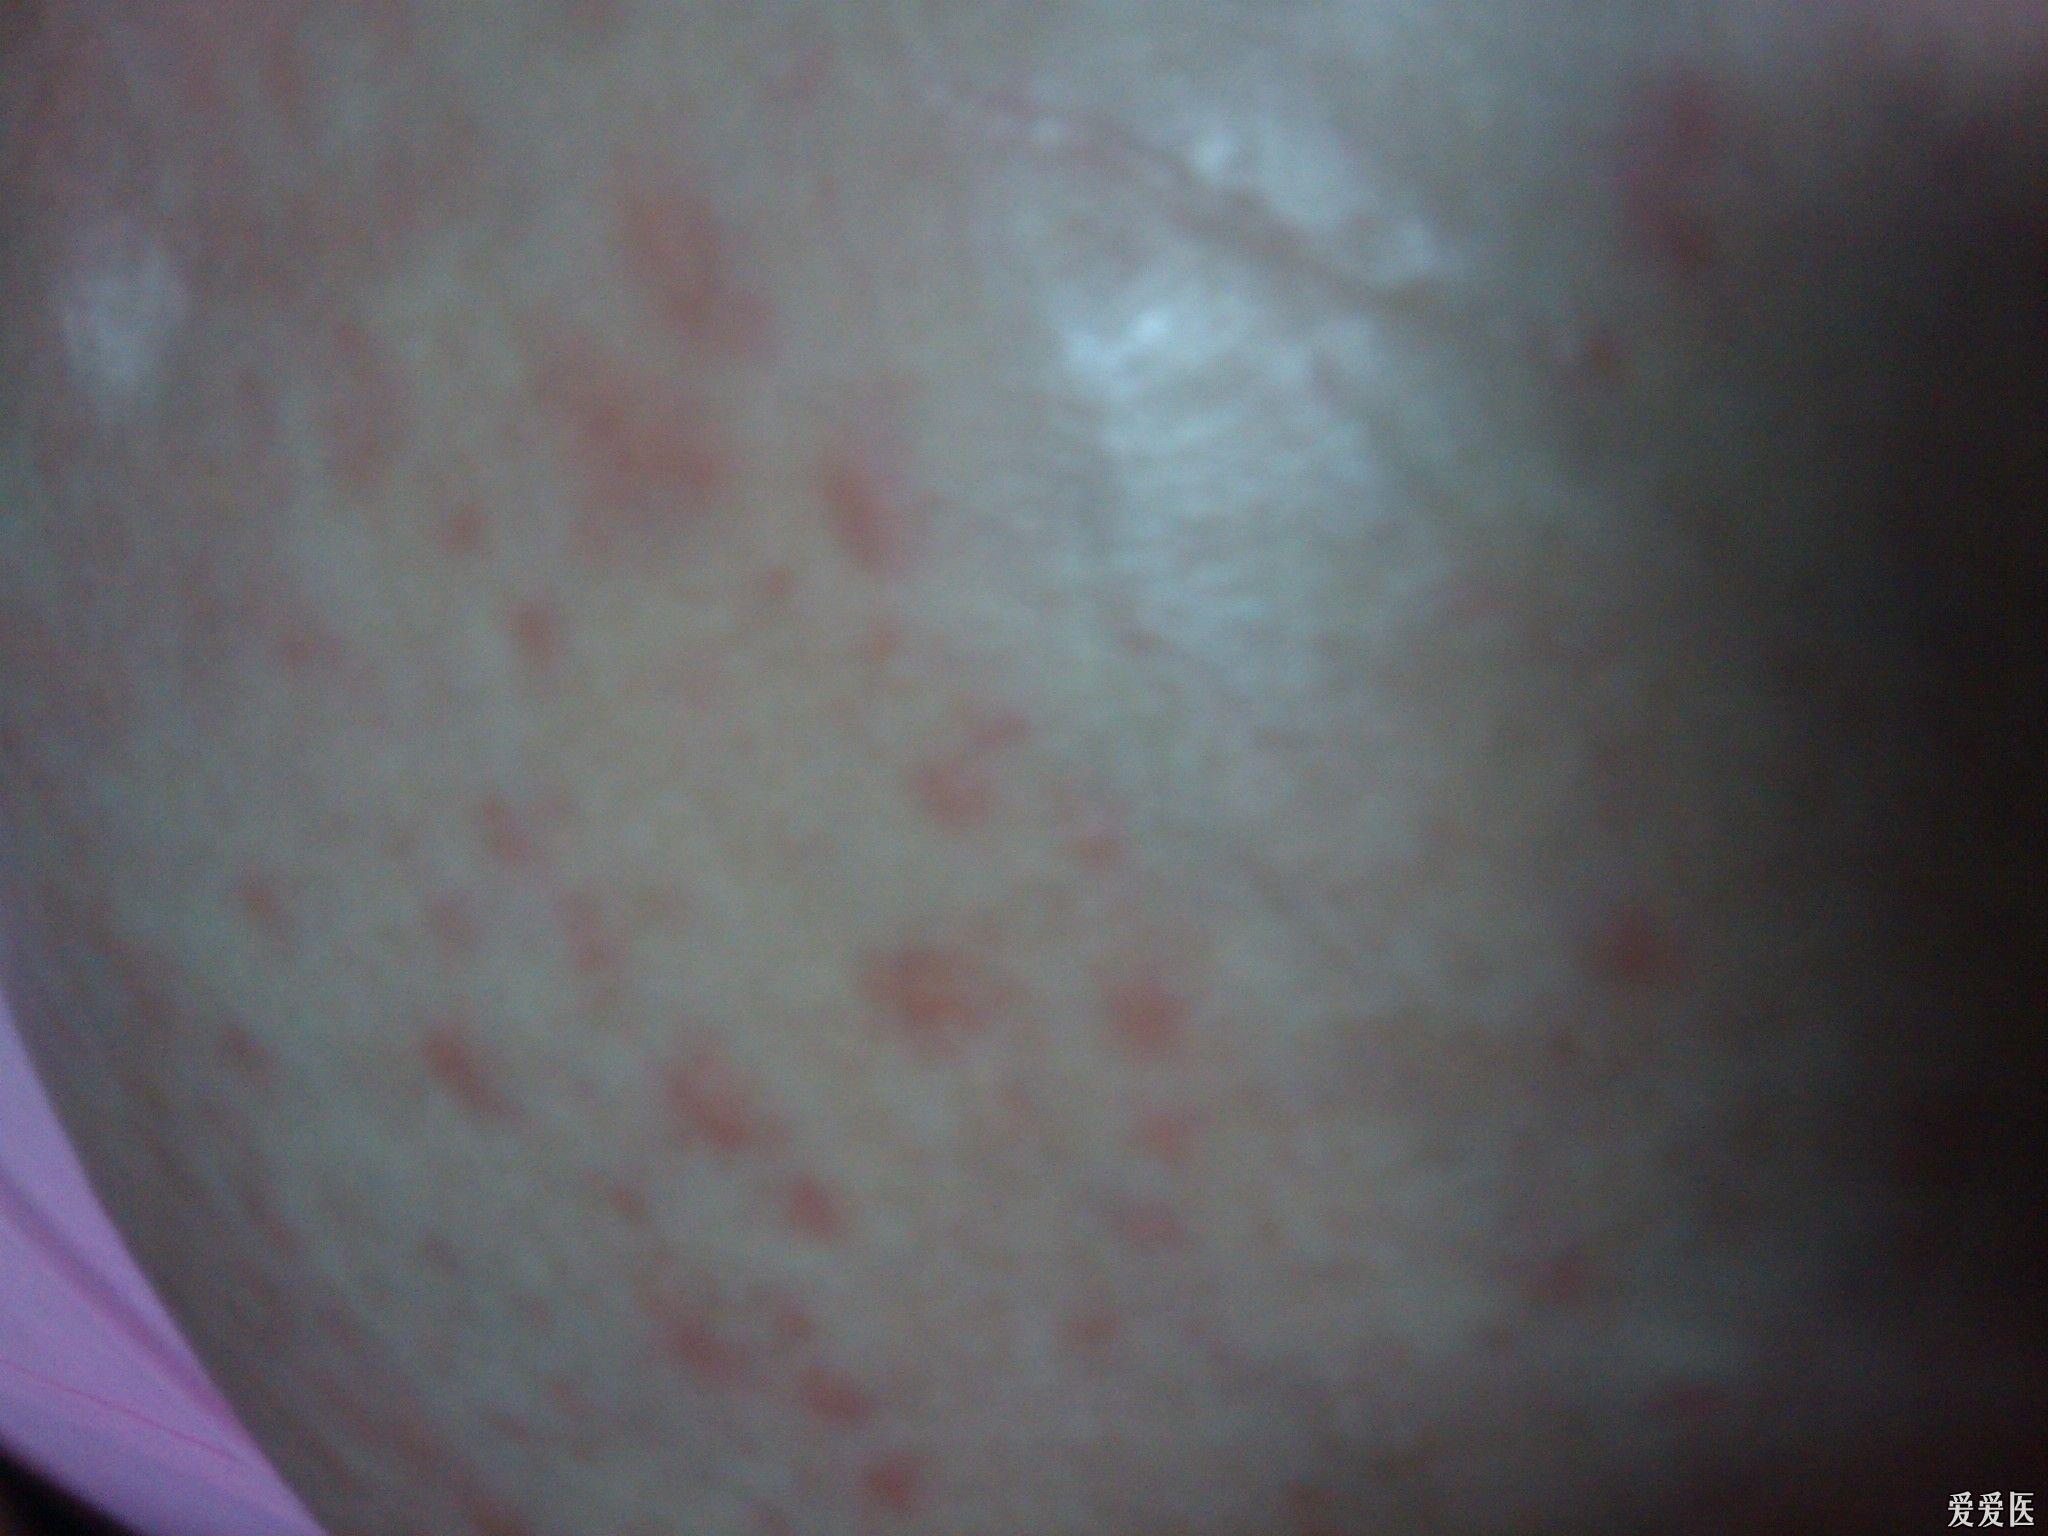 一个孕39周的孕妇,肚皮起的红色皮疹,奇痒 ,附有图片